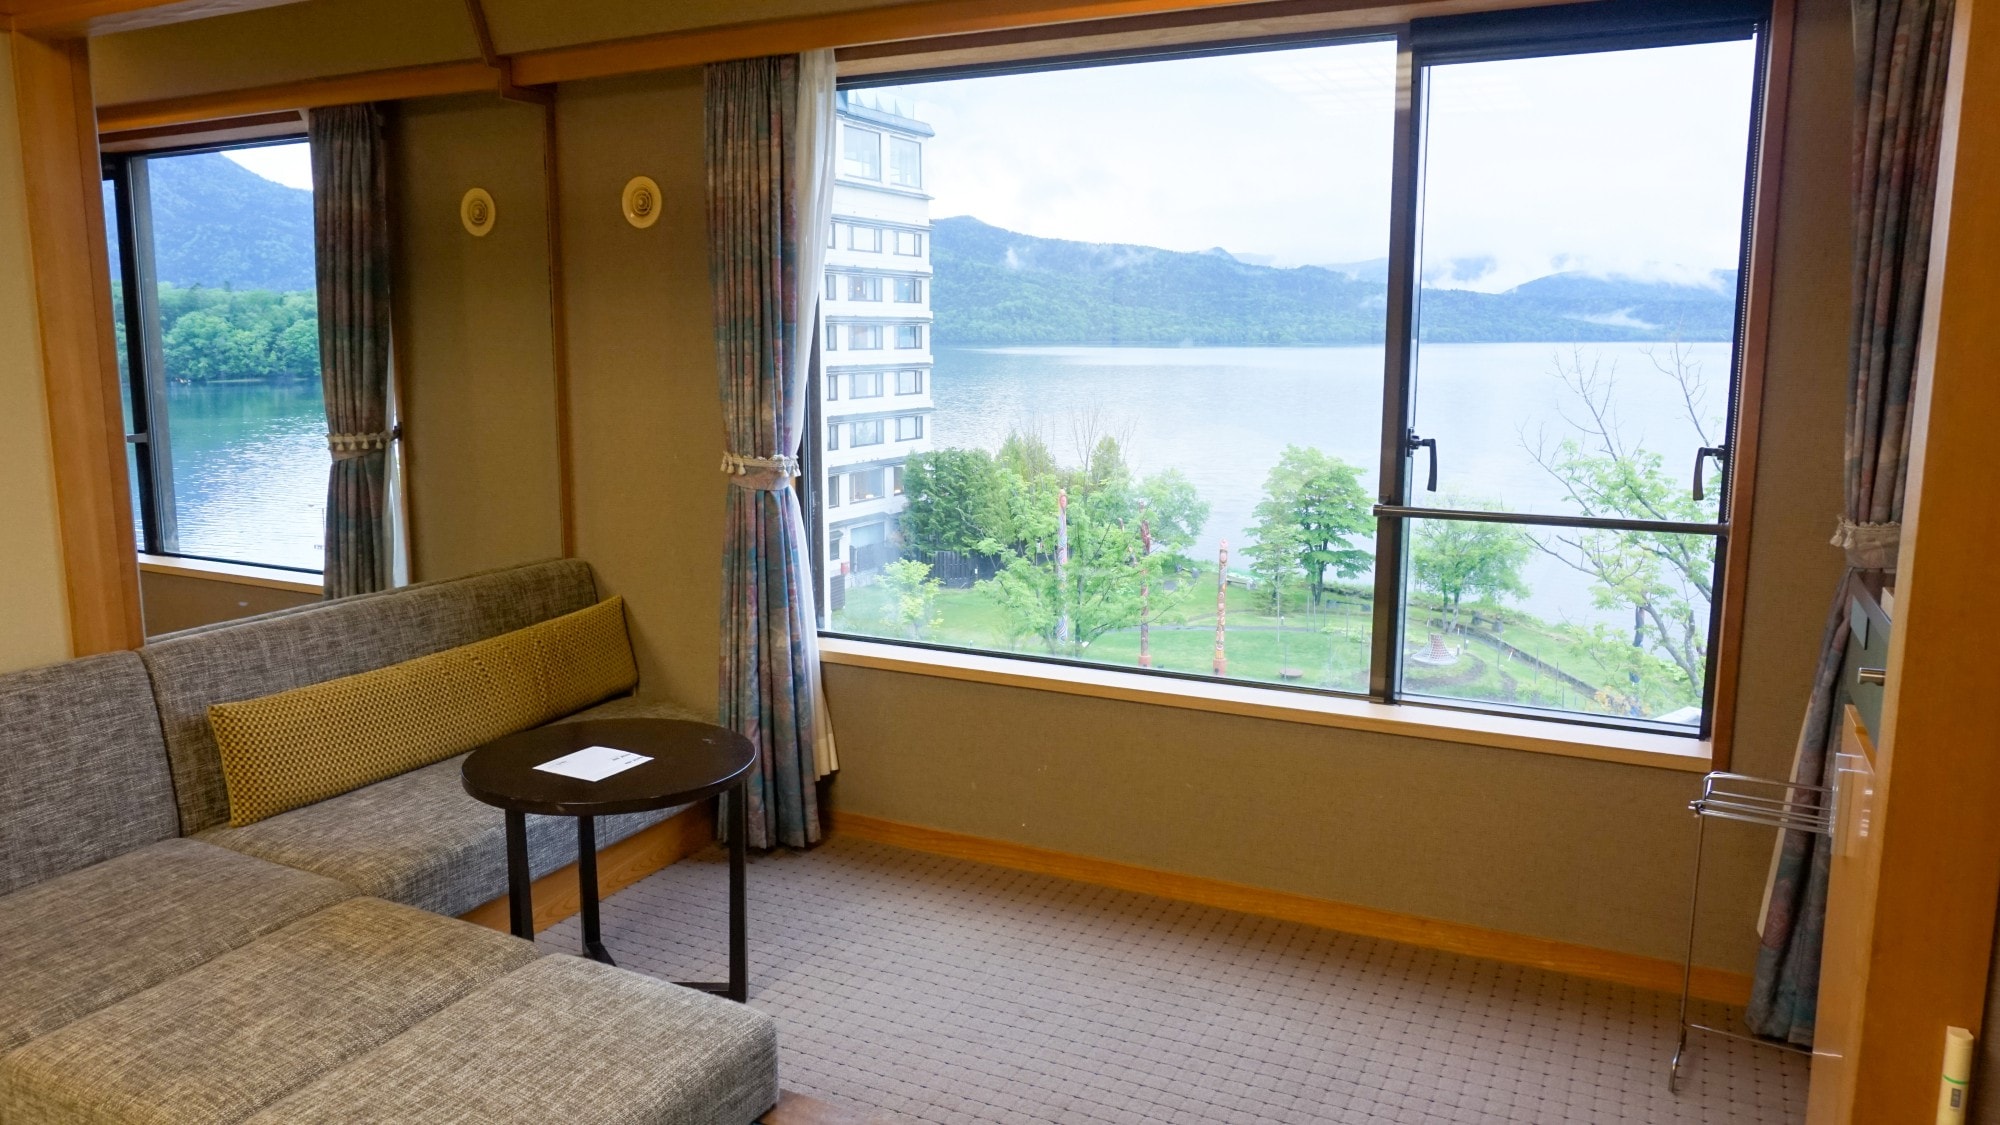 [ริมทะเลสาบ] ห้องเตียงแฝดสไตล์ญี่ปุ่น (มีอ่างอาบน้ำ) / เพลิดเพลินกับทะเลสาบอะคังอันงดงามที่แผ่กว้างต่อหน้าคุณ (ภาพ)